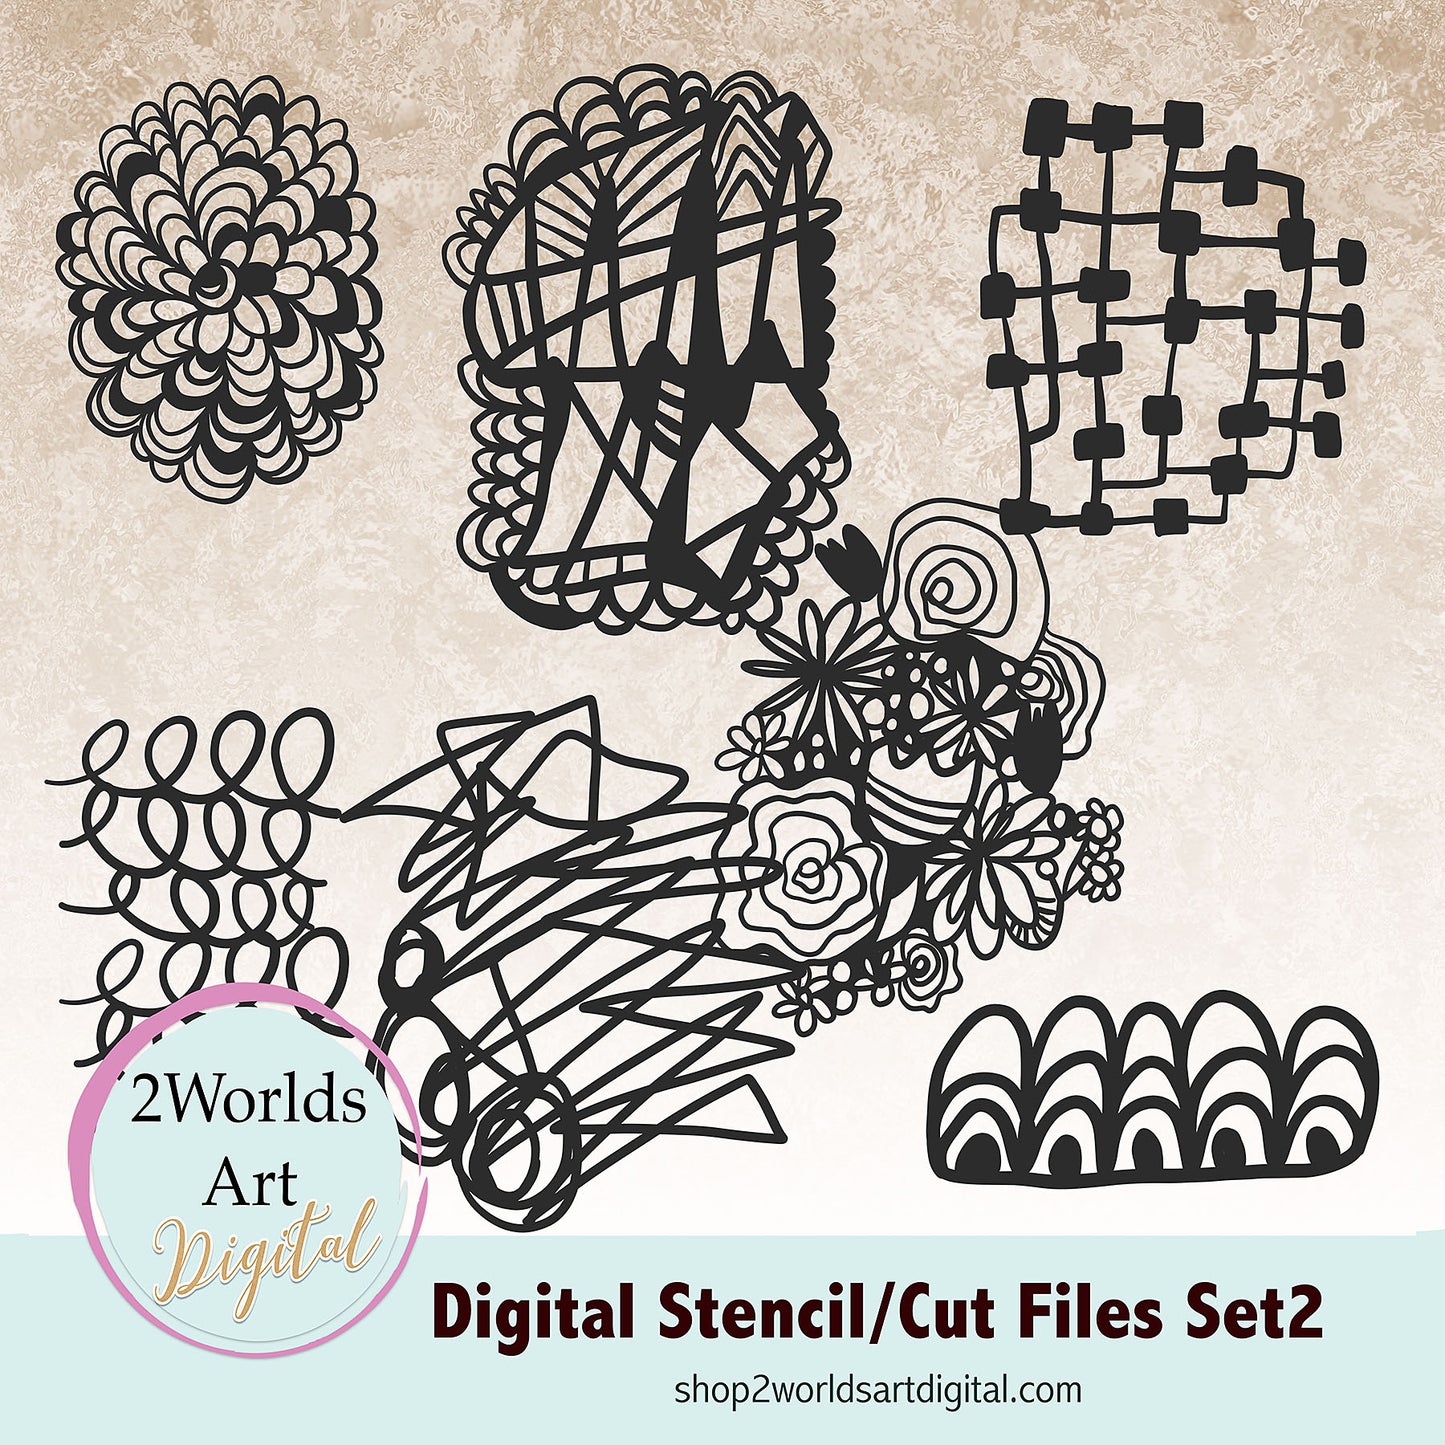 Digital Stencils/Cut Files Set 2